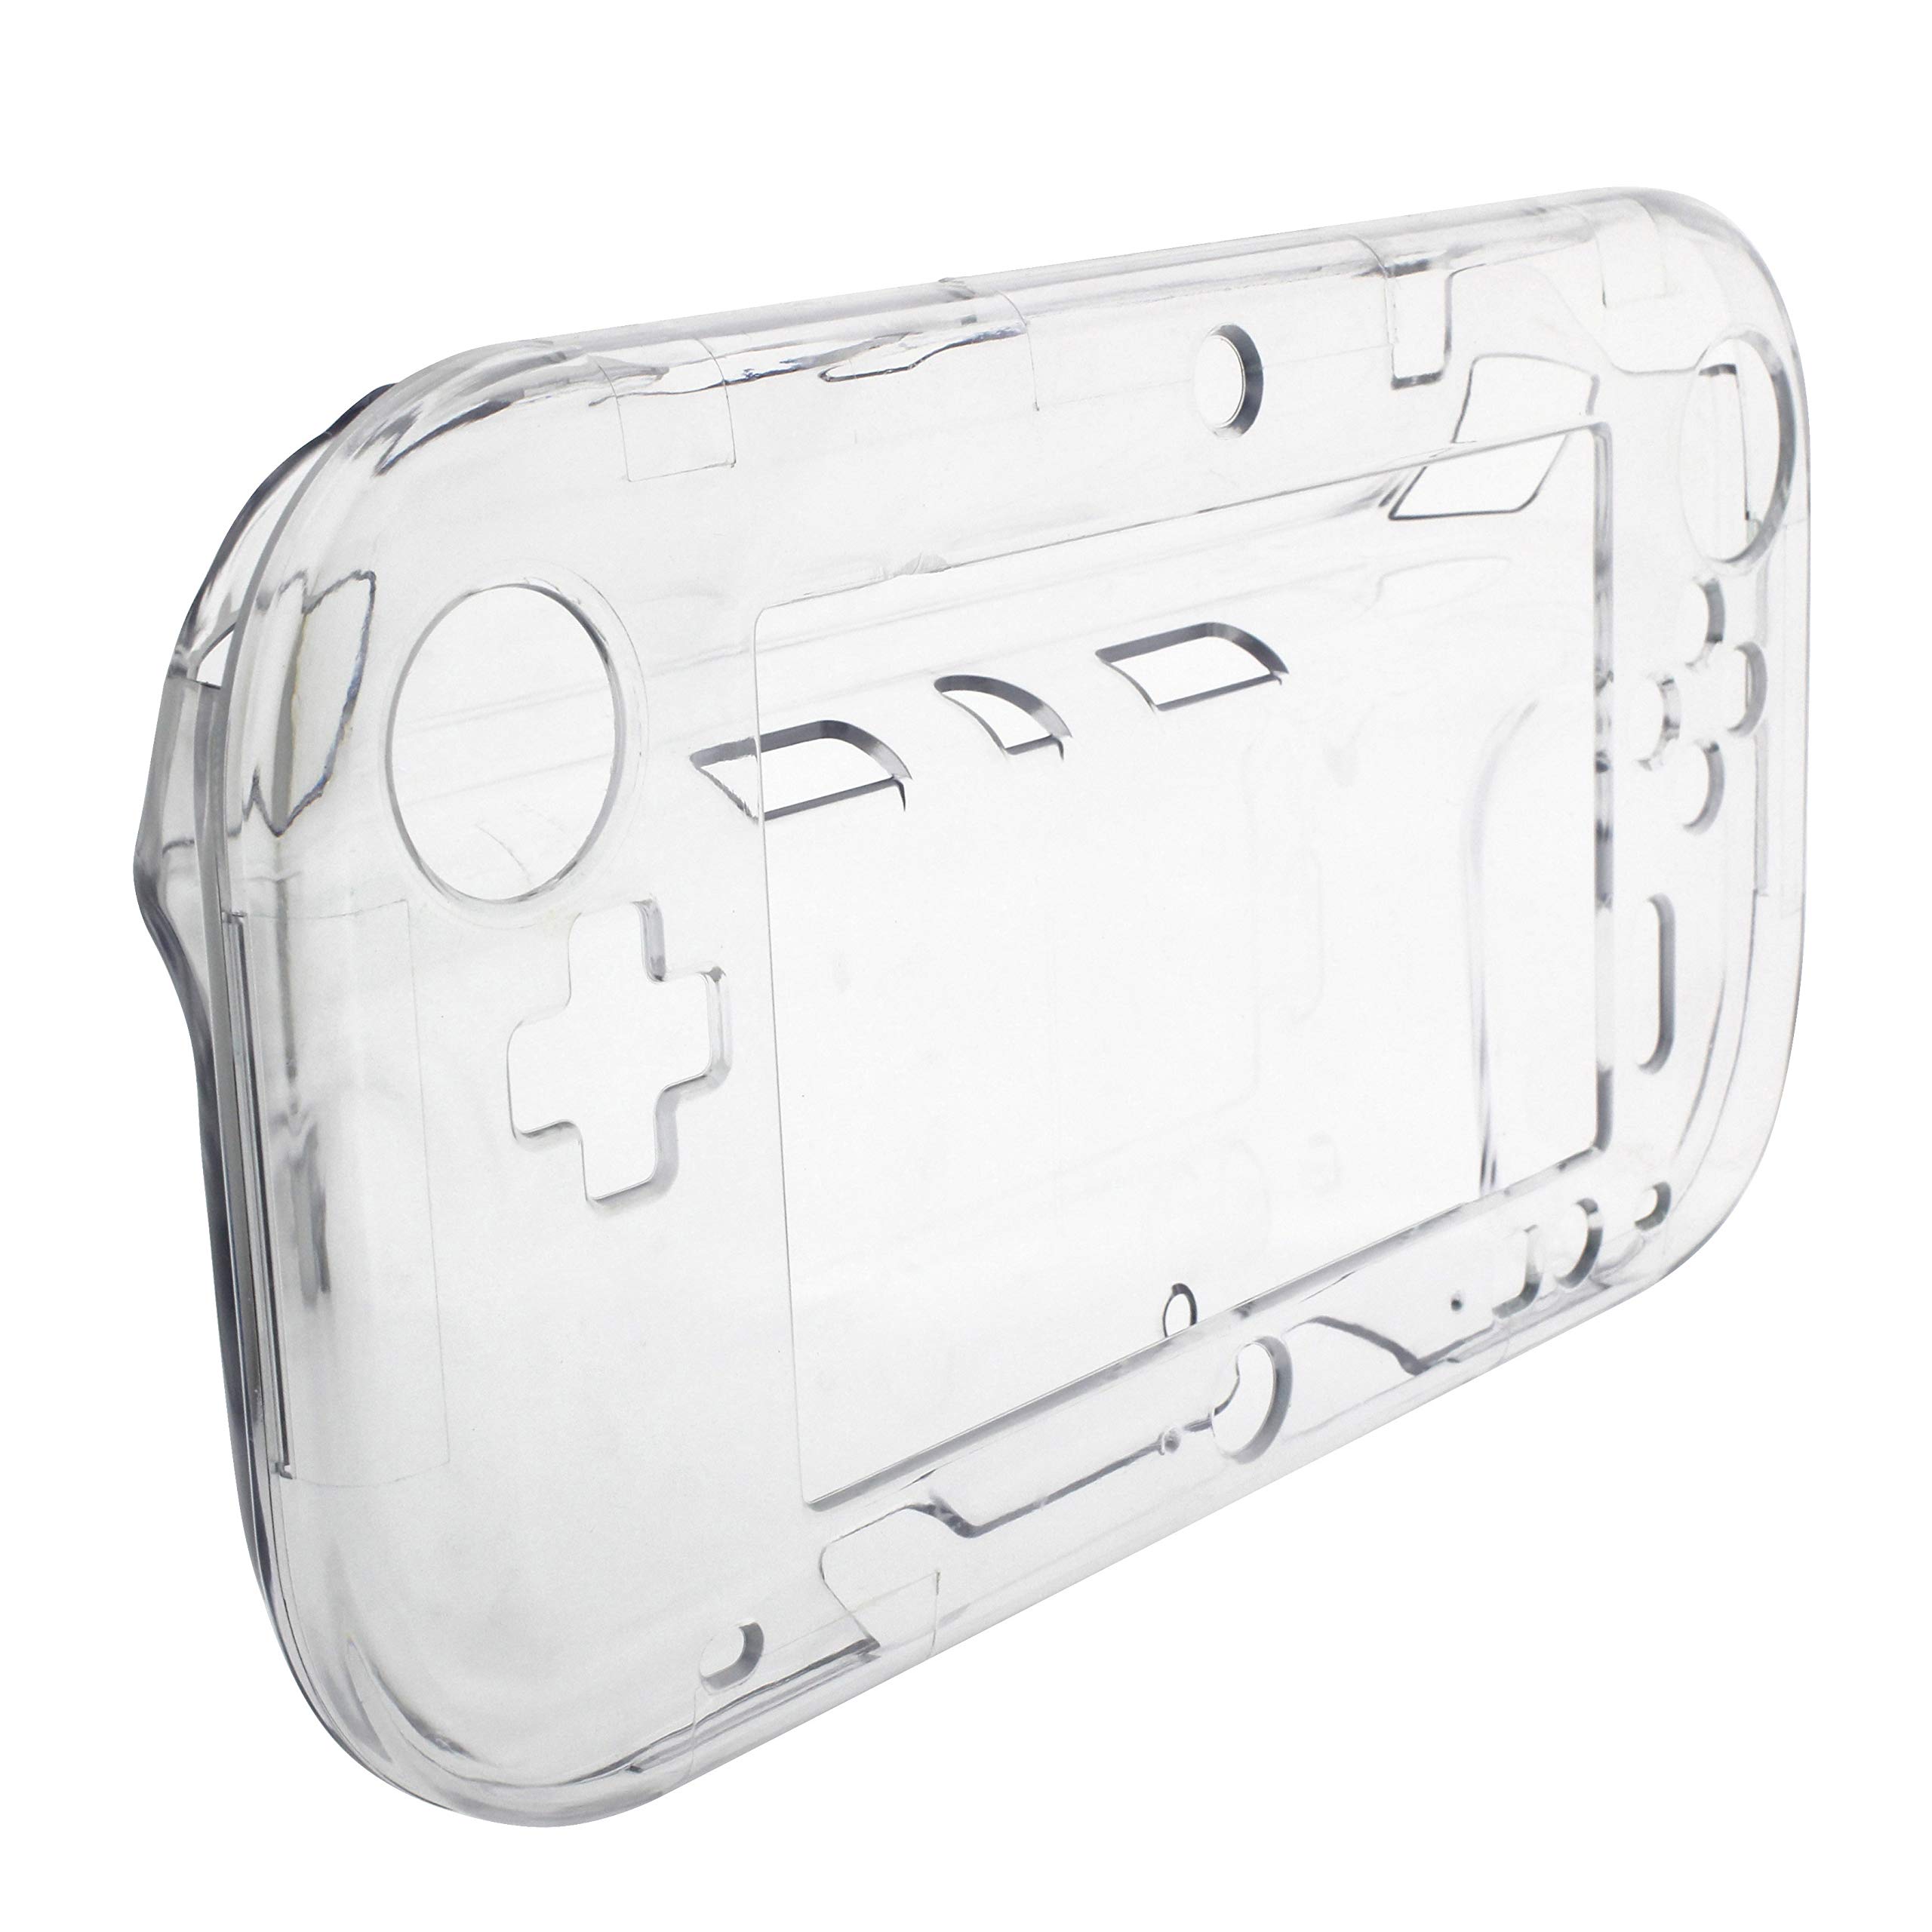 OSTENT ケース 保護 クリア クリスタル ハード ケースカバー スキンシェル 任天堂 WiiU ゲーム パッド 用